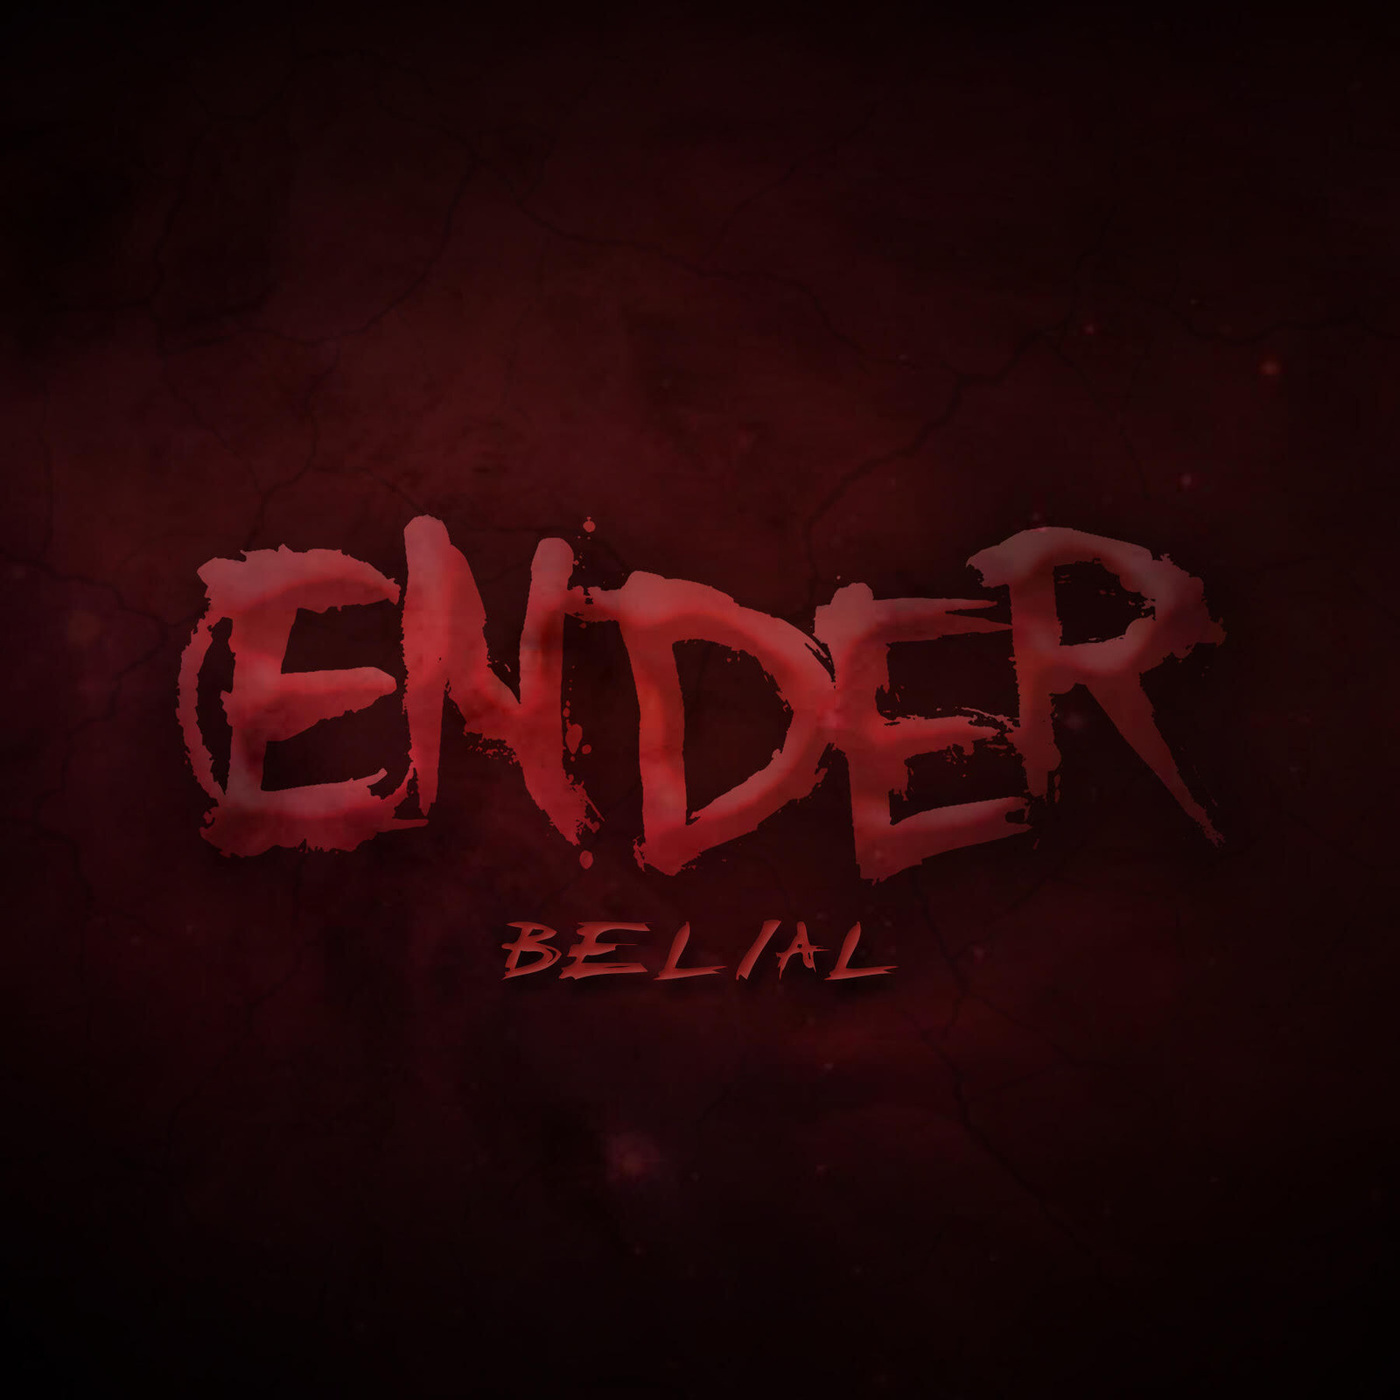 Ender - Belial (Single) (2020)